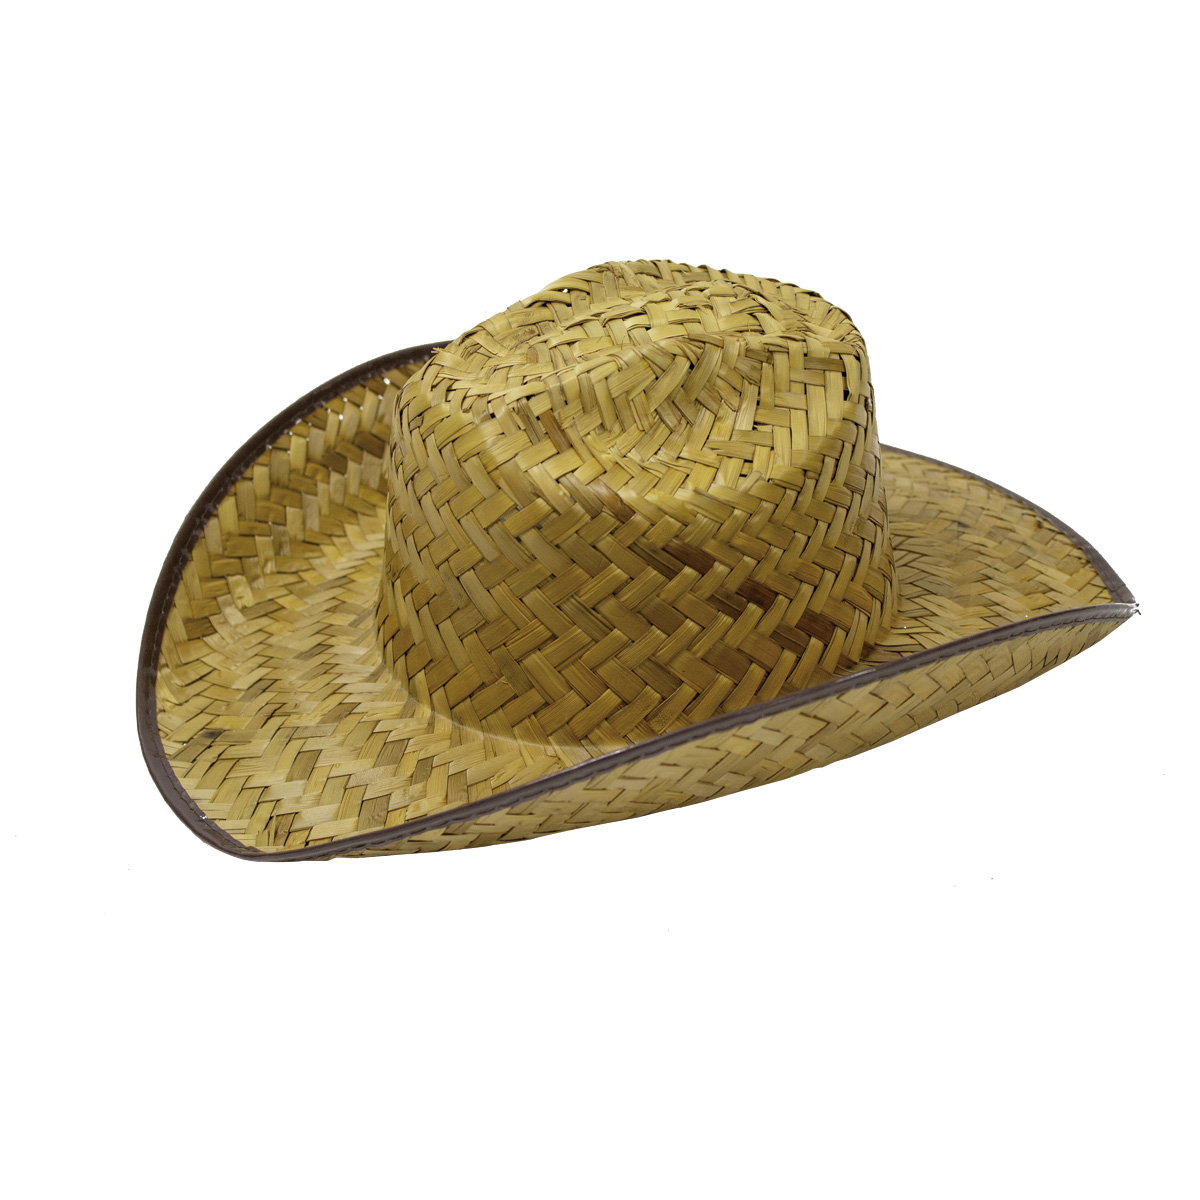 Sombrero vaquero de paja – Representaciones Durán